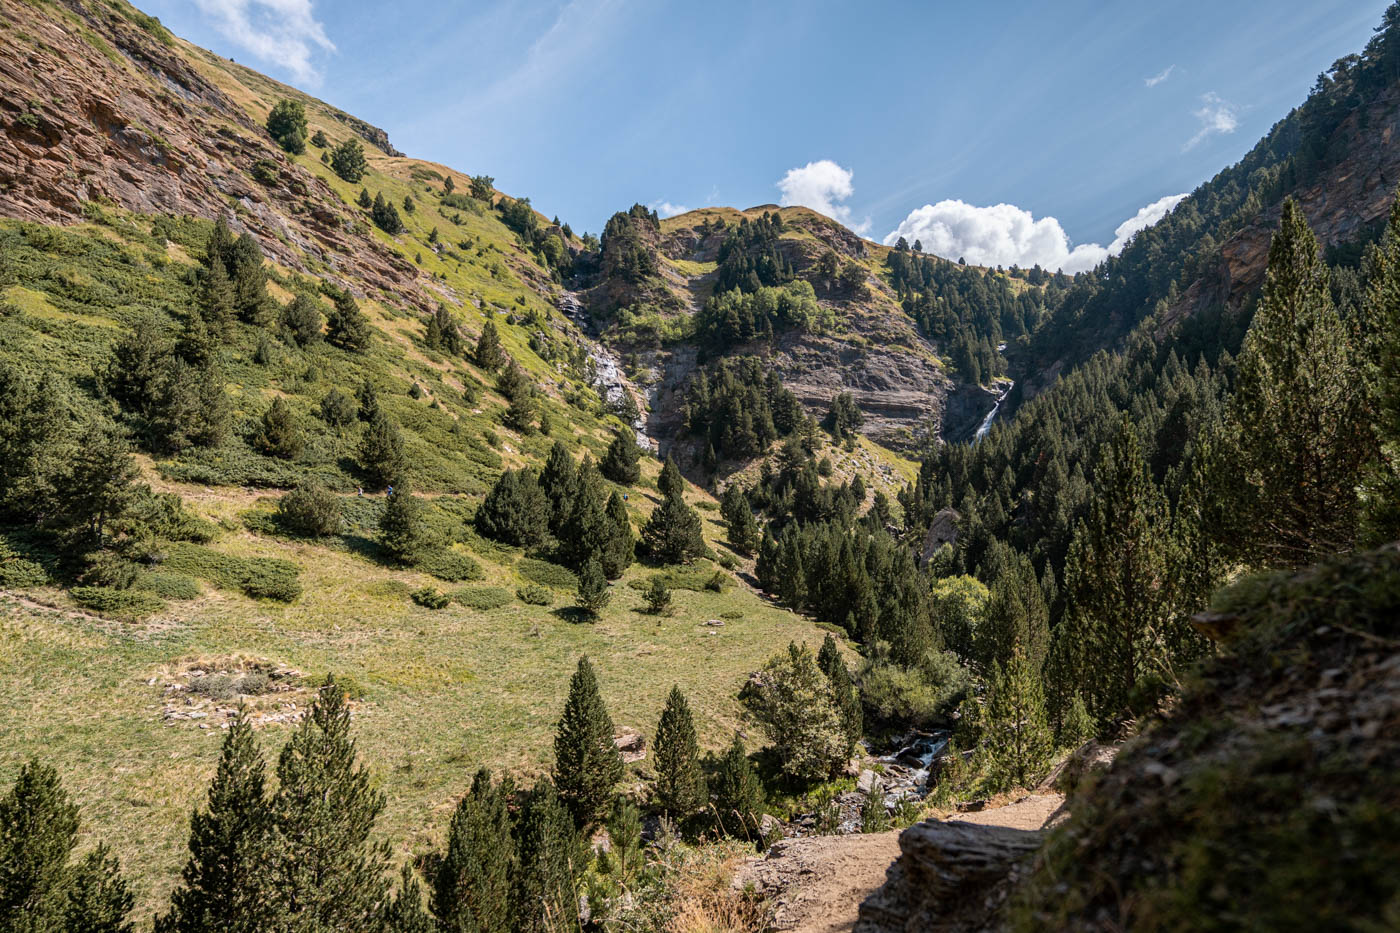 Apine terrain in Aragonese Pyrenees (Summer)